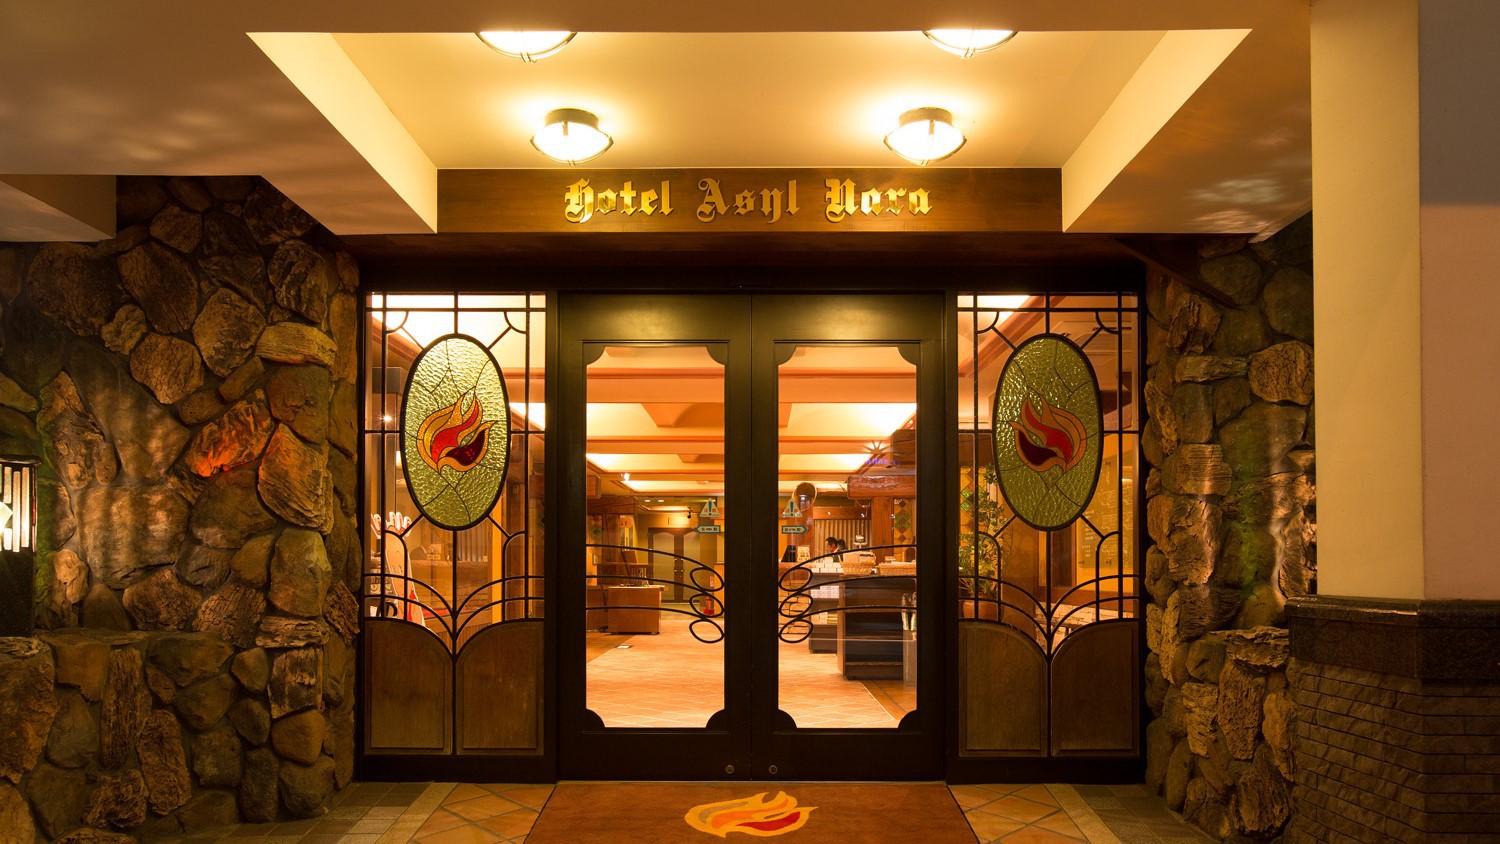 ホテルアジール・奈良正面玄関